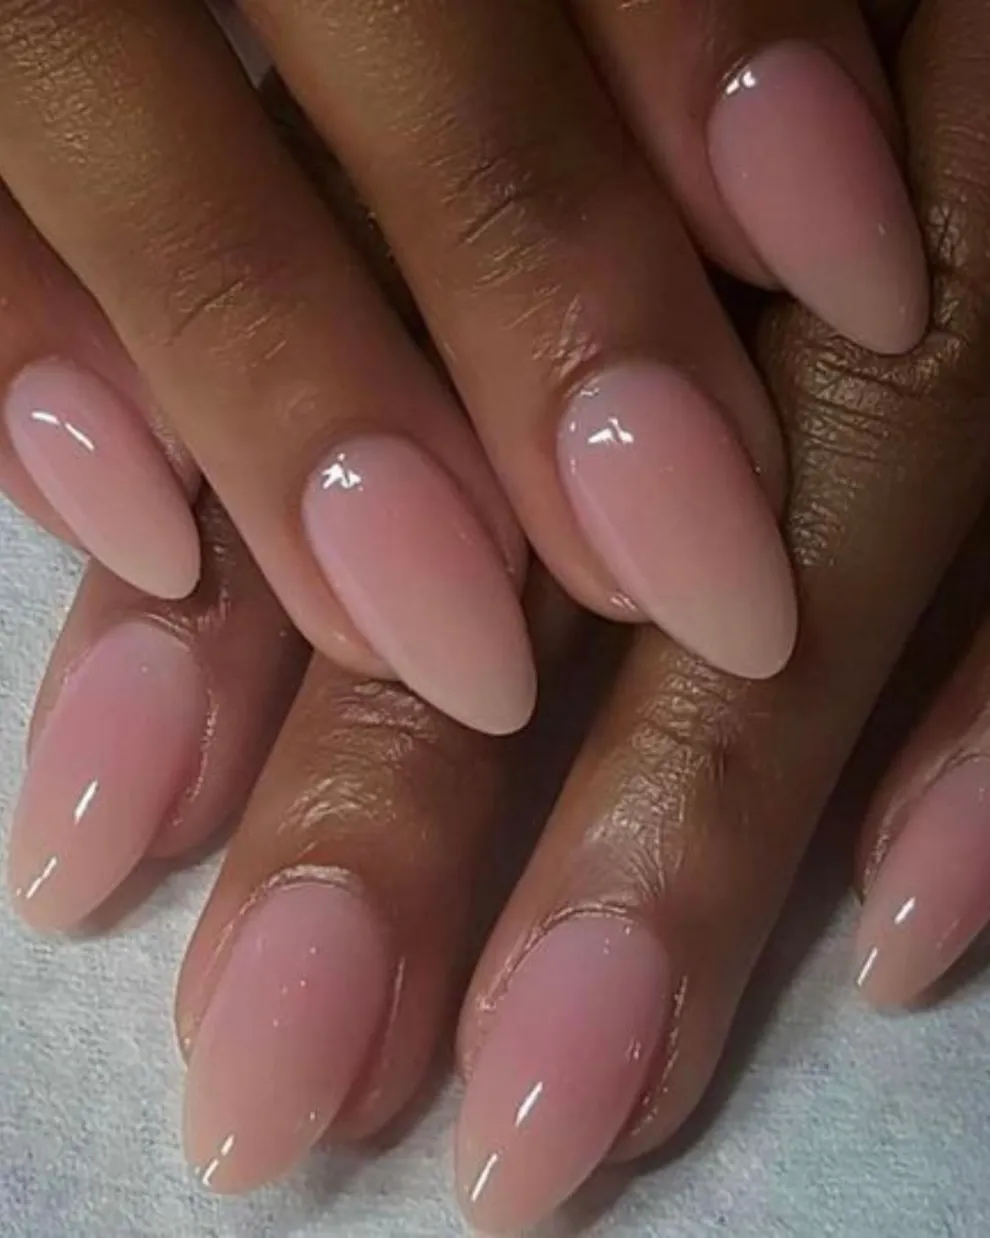 El nail art en degradé está muy de moda y en tonos rosas y blancos queda súper chic.